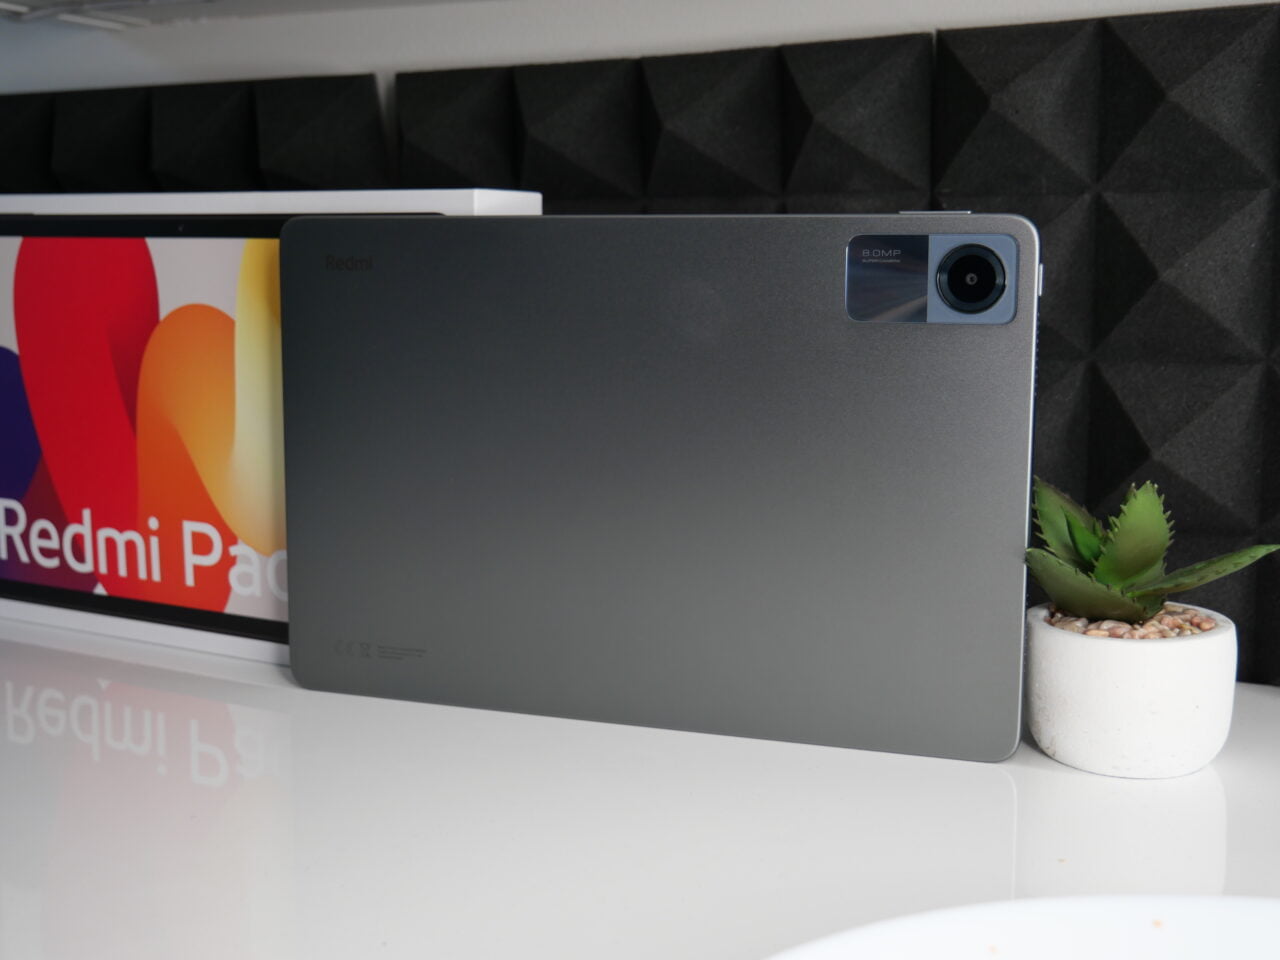 Tablet marki Xiaomi Redmi z tylnym aparatem fotograficznym, oparty o monitor z wyświetlonym logo Redmi, obok mała doniczka z sukulentem.